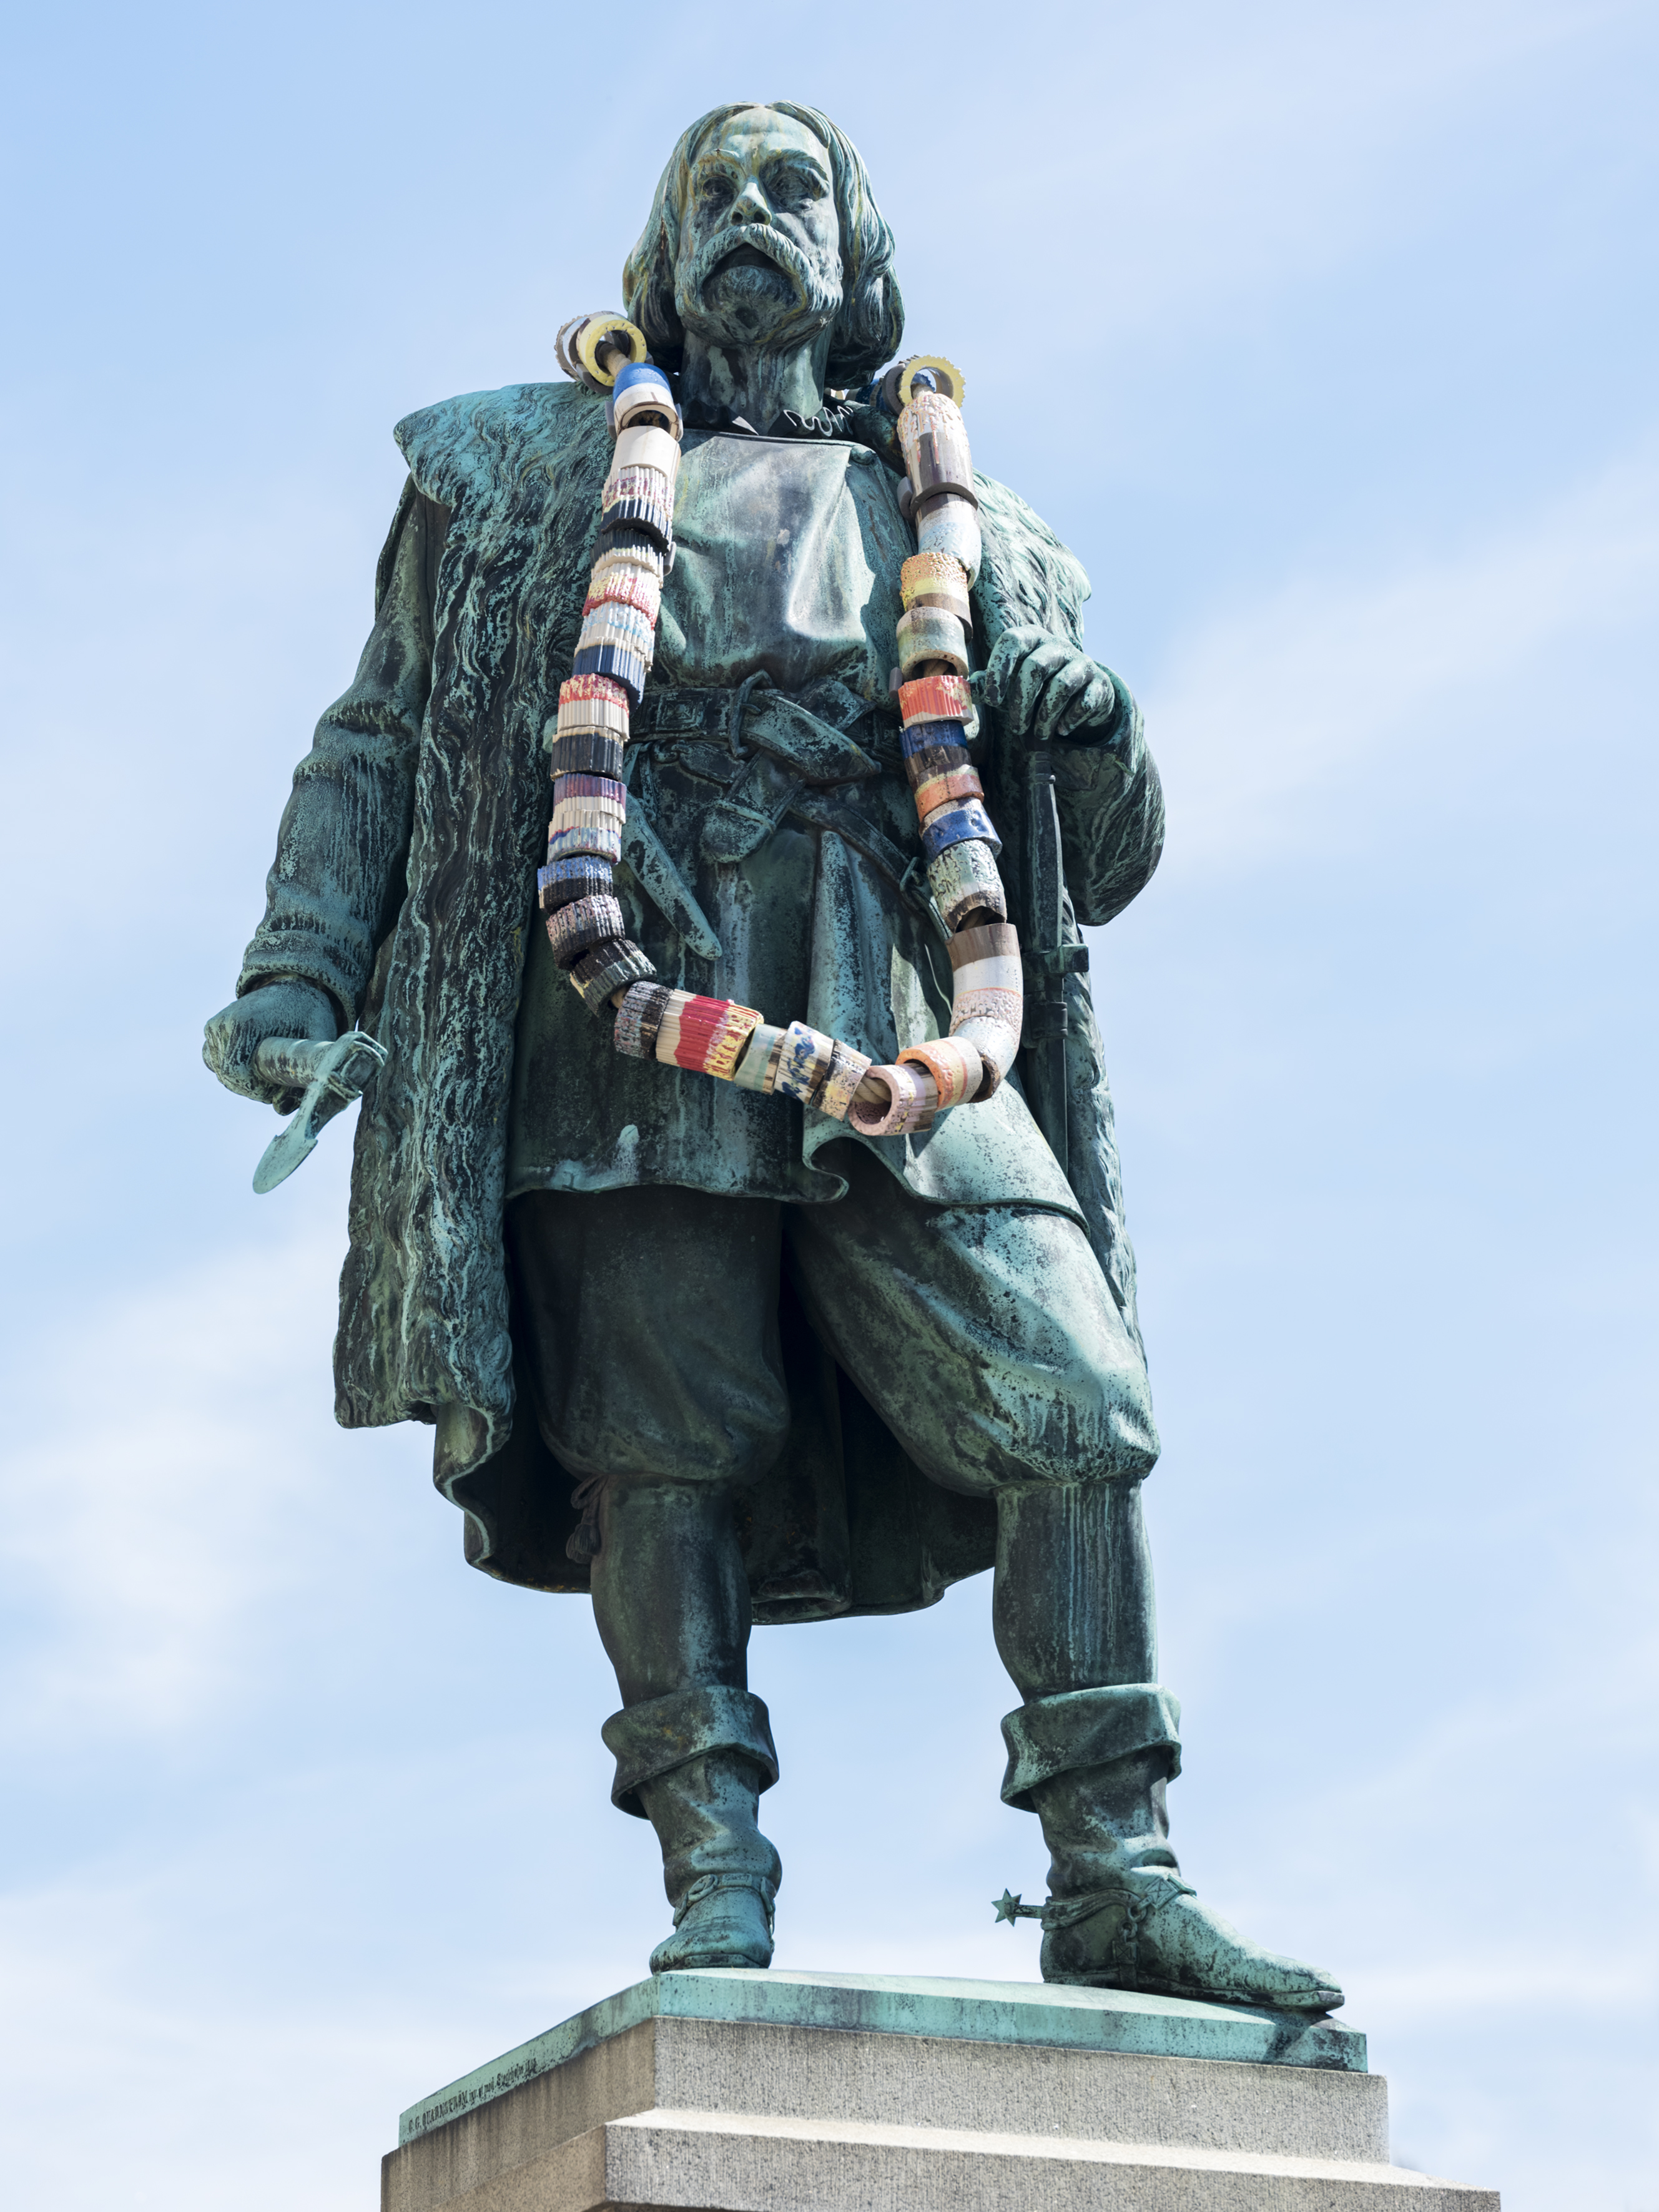 En bronsstaty föreställande Engelbrekt har på sig ett överdimensionerat halsband med stora pärlor i olika dova färger, bakom statyn är himlen blå